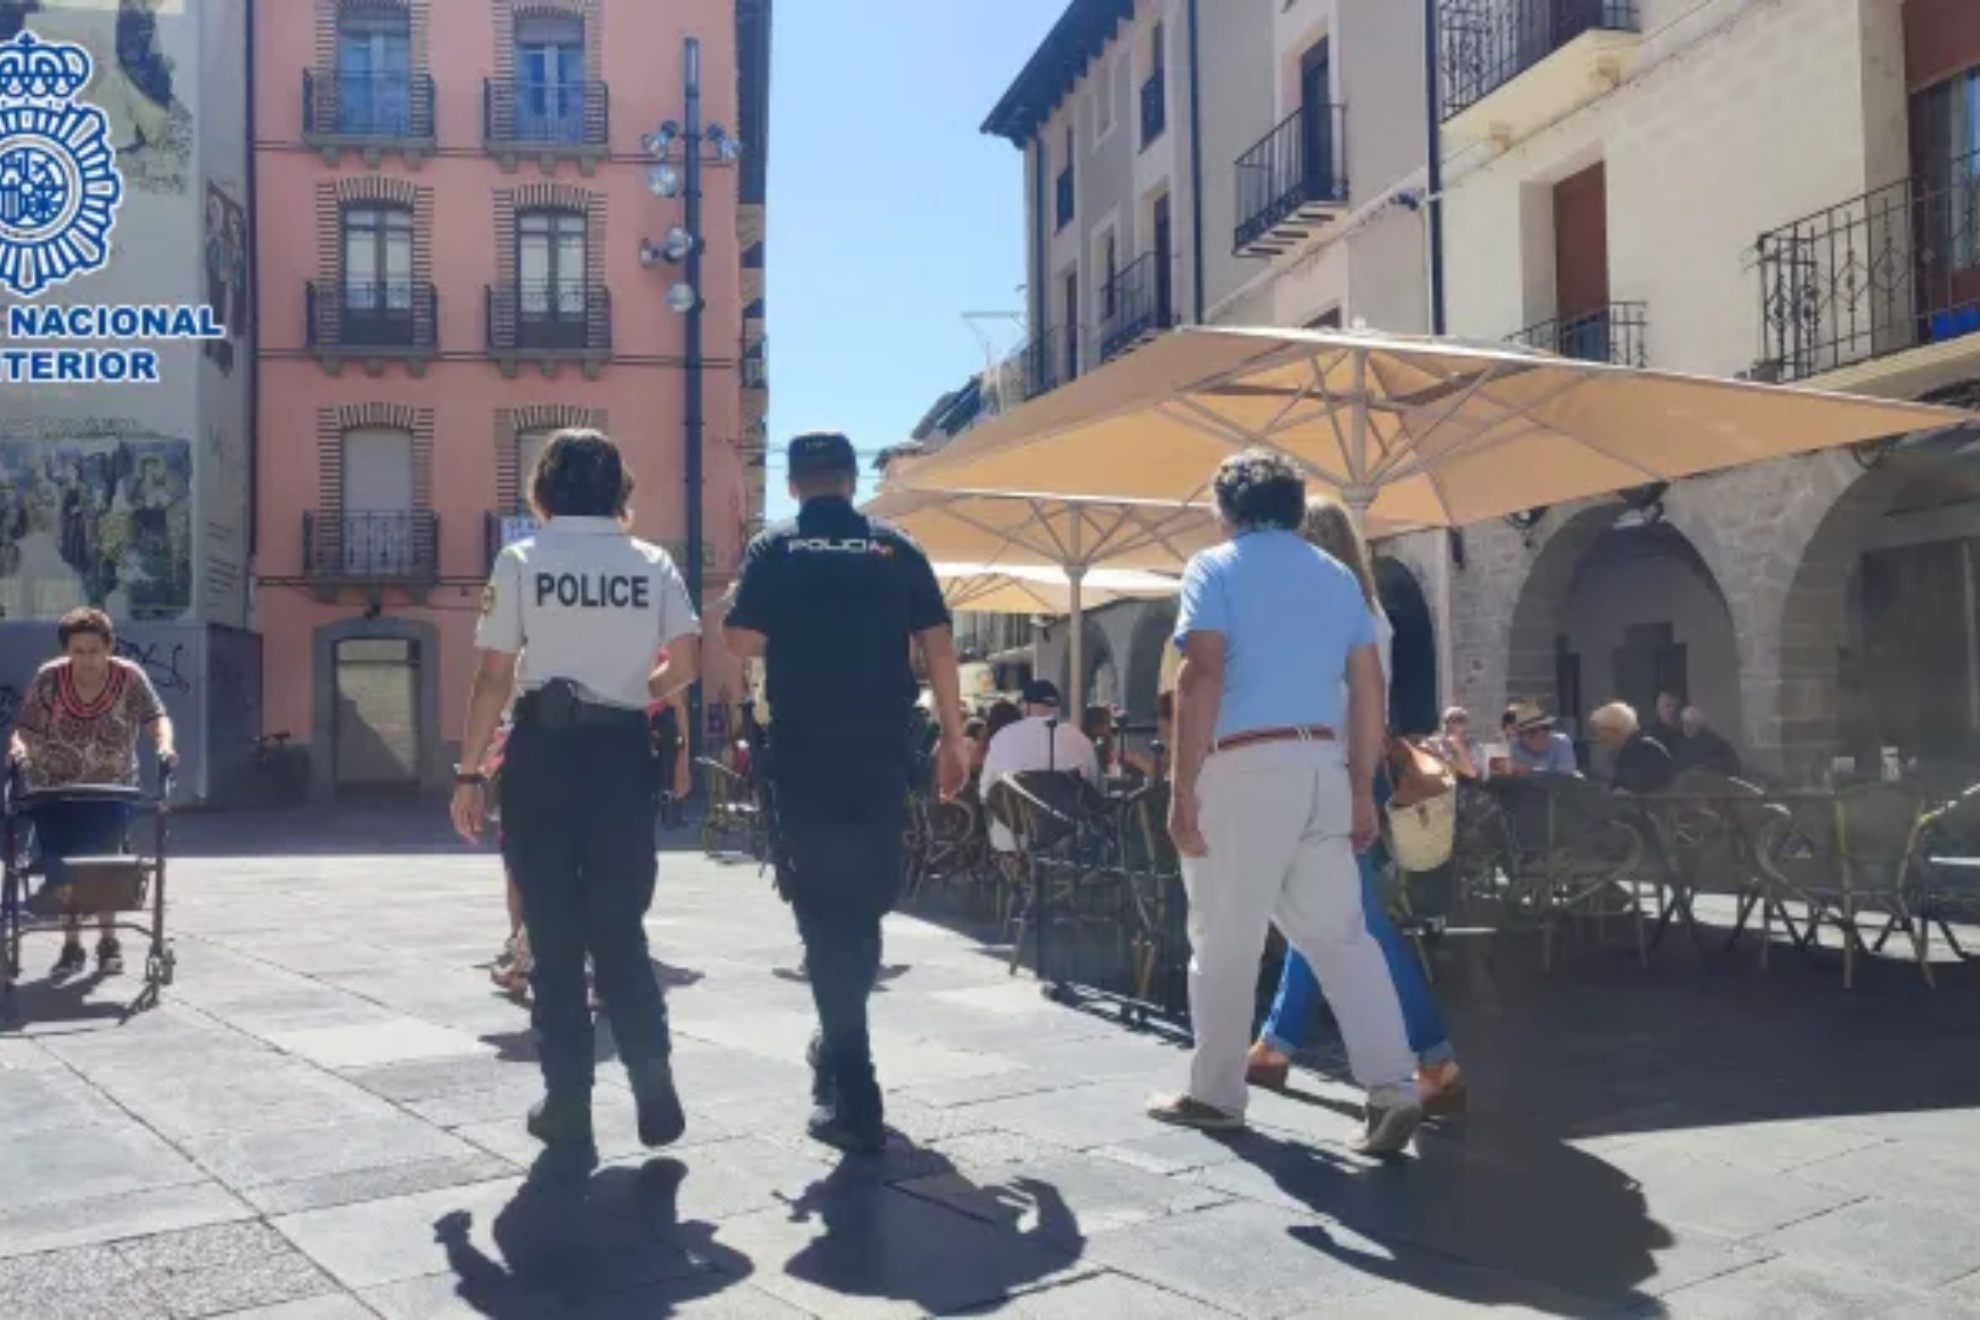 Cooperación de policías española y francesa en Jaca